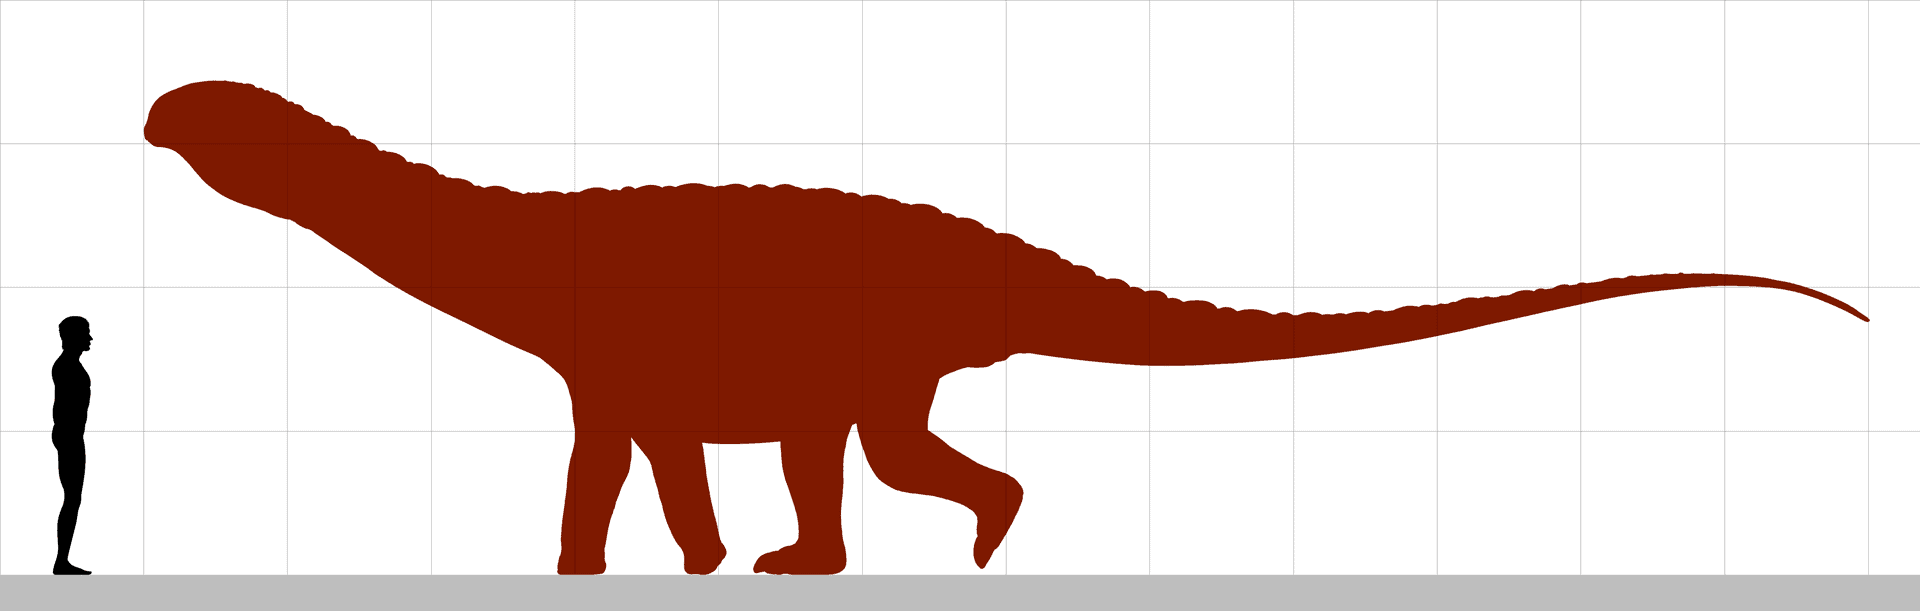 Saltasaurus - dimensiuni estimate